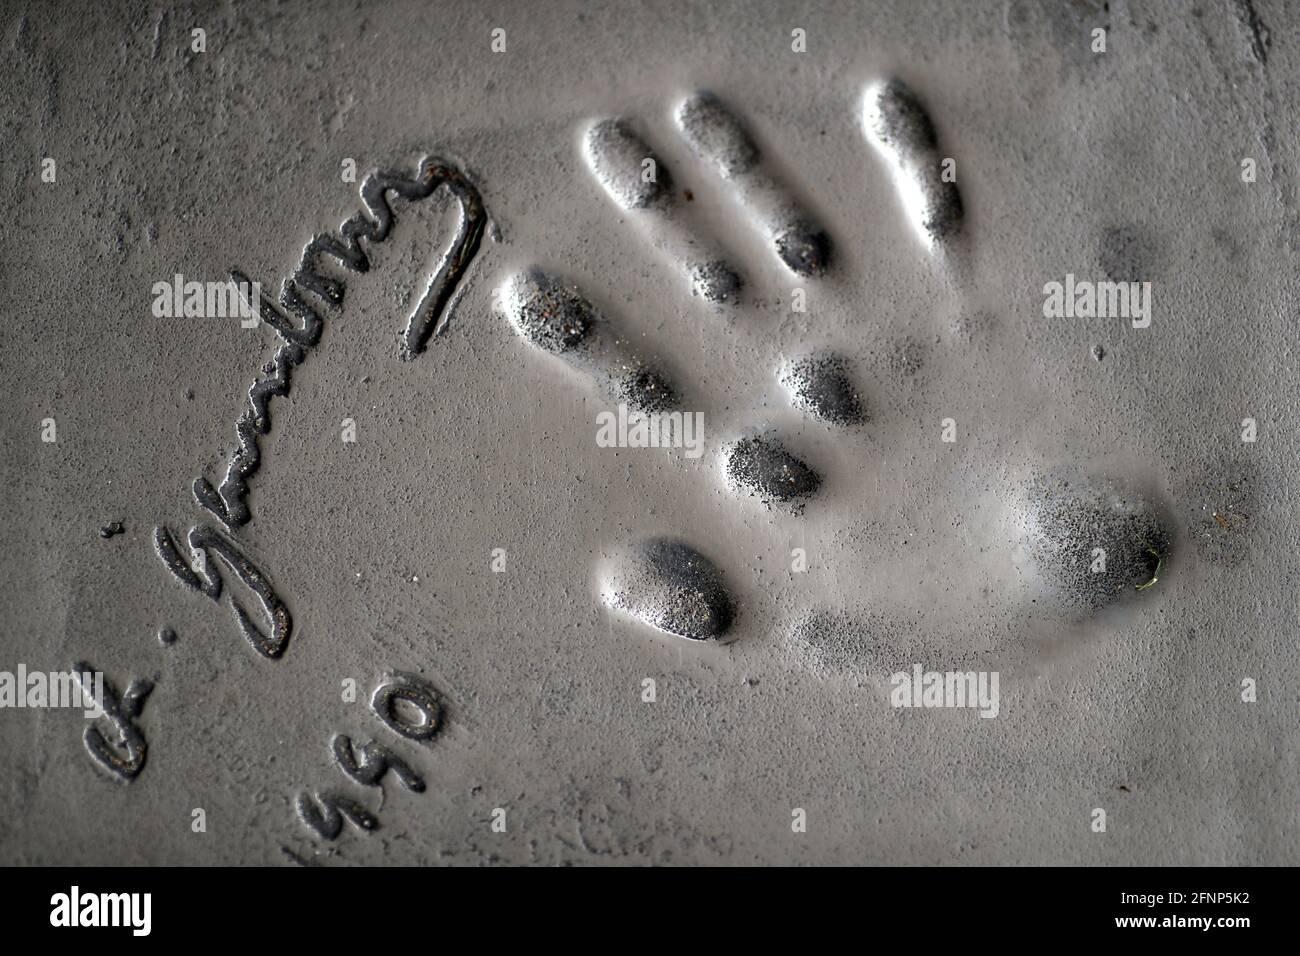 Serges Gainsbourg's handprints on the Avenue of Stars Pavement, Boulevard de la Croisette Seafront/ Cannes. France. Stock Photo